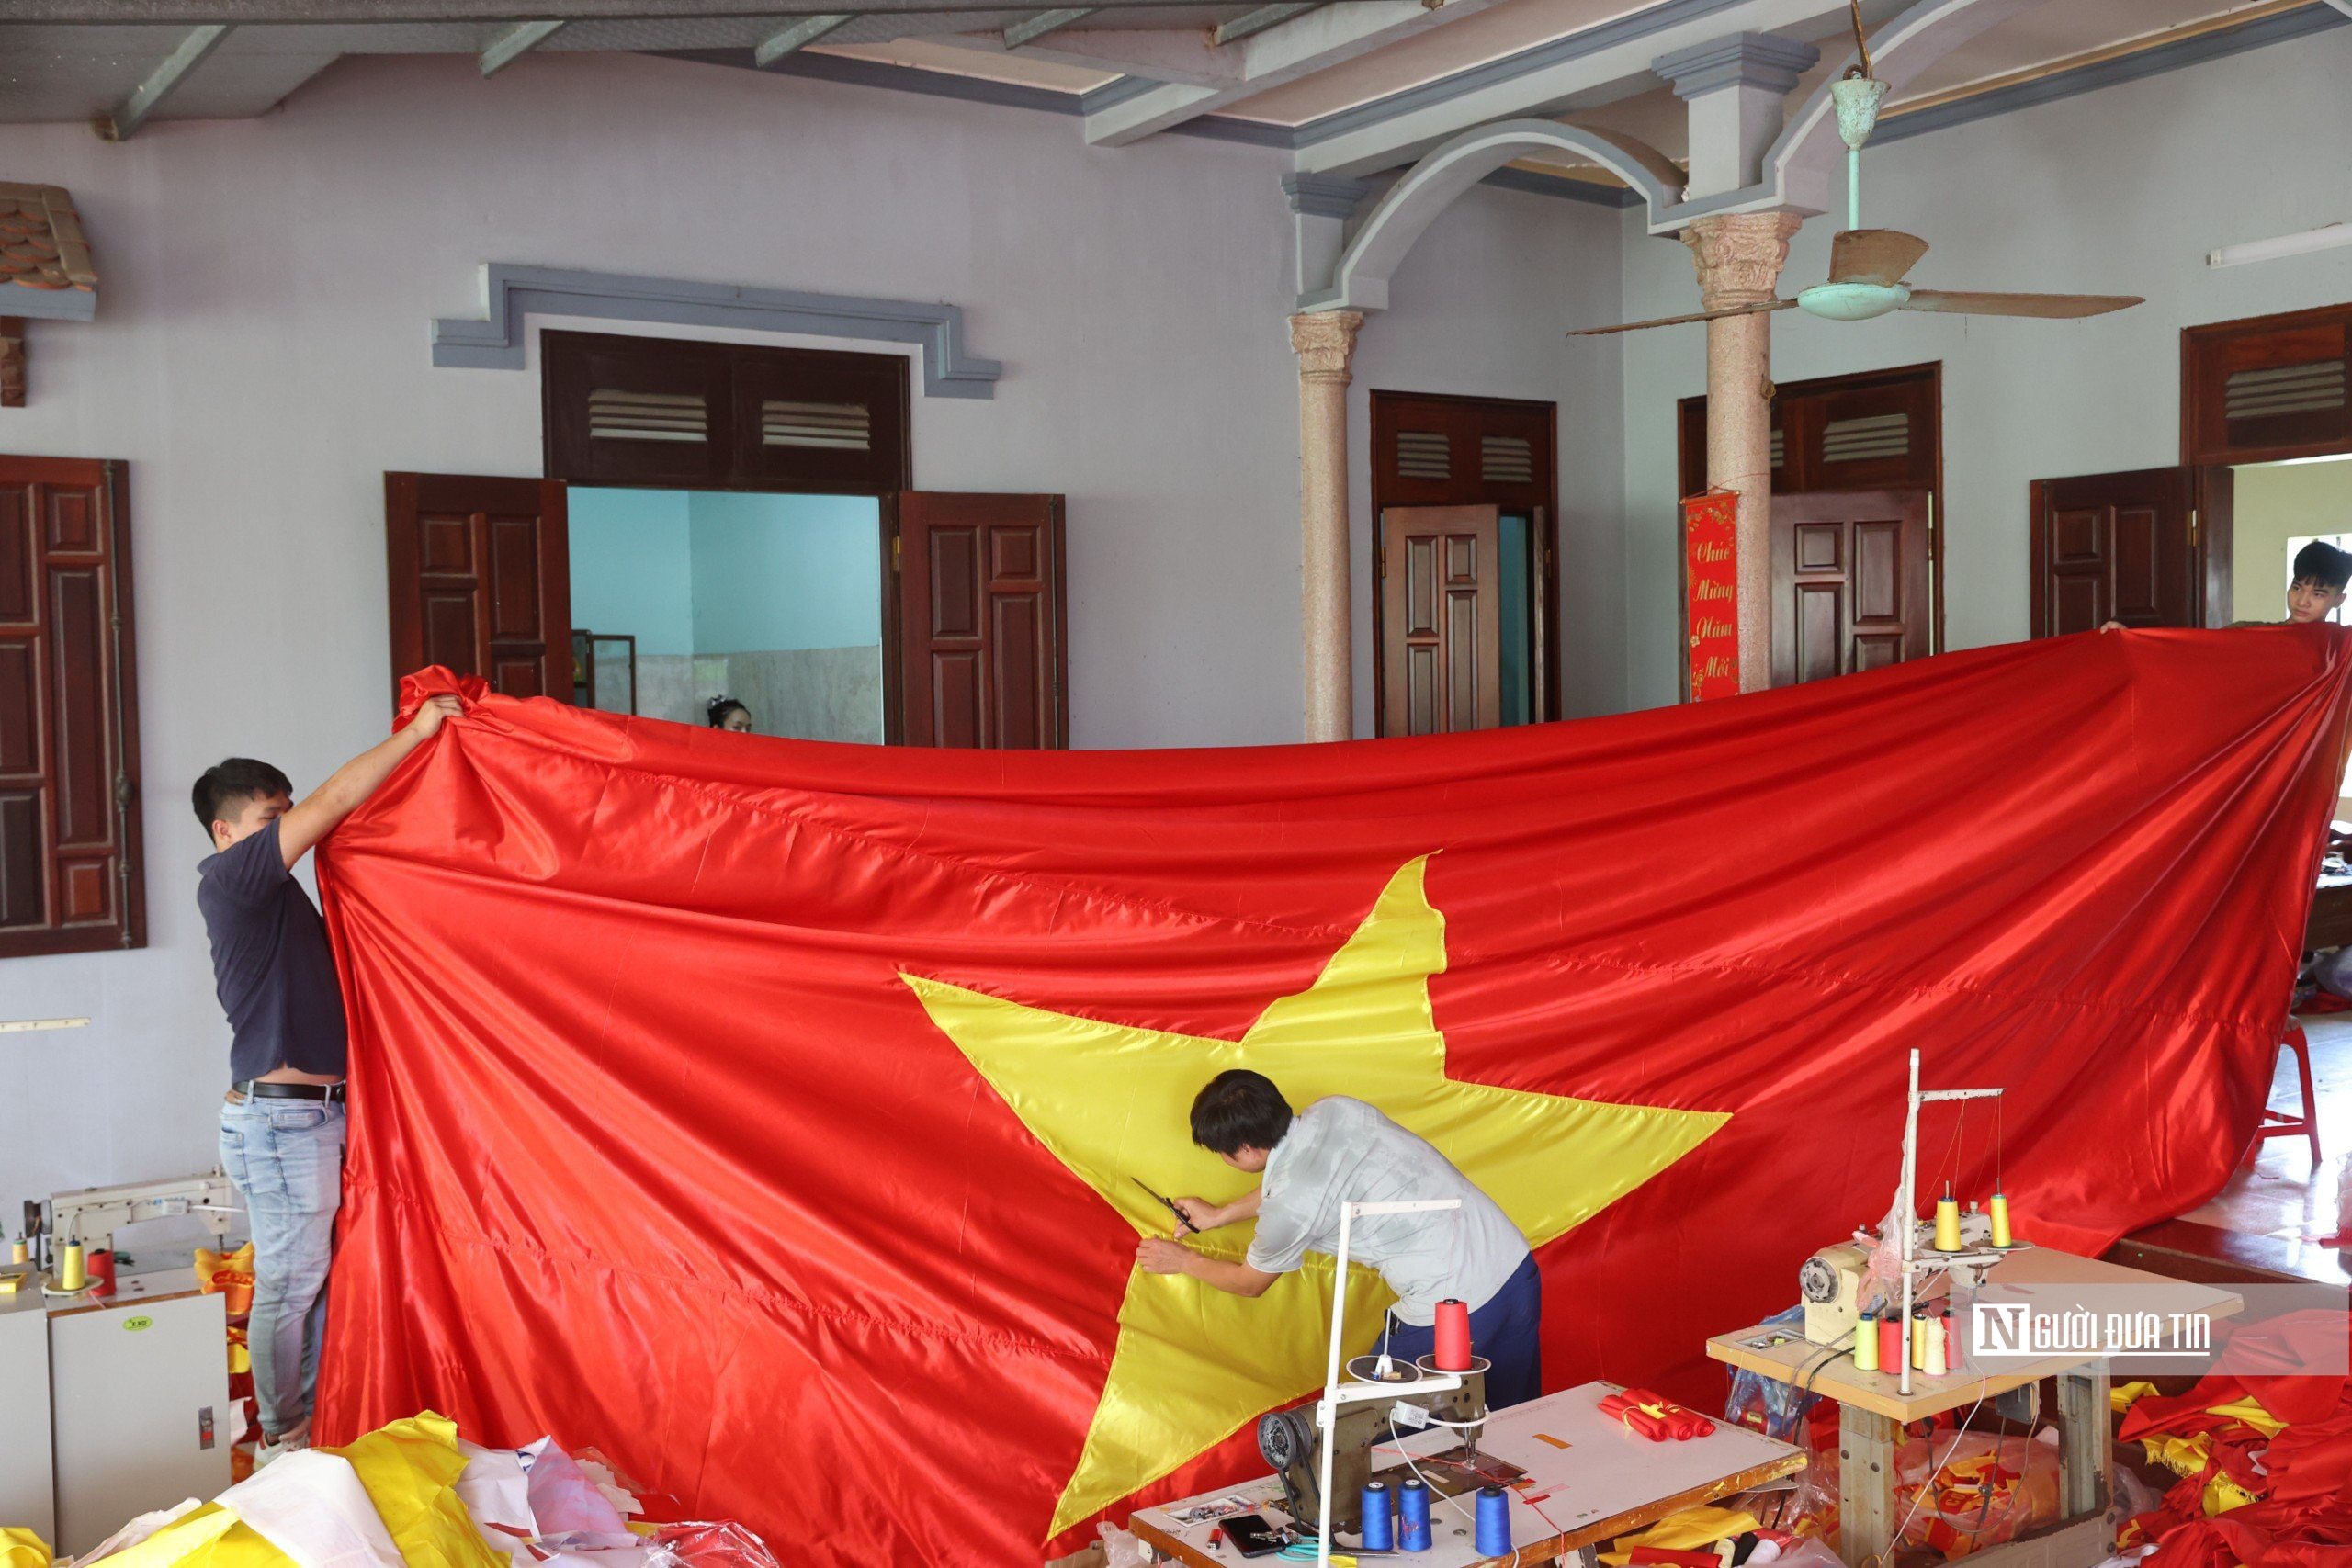 Sự kiện - Mục sở thị làng may cờ Tổ quốc lớn nhất Hà Nội trước dịp Quốc khánh (Hình 12).